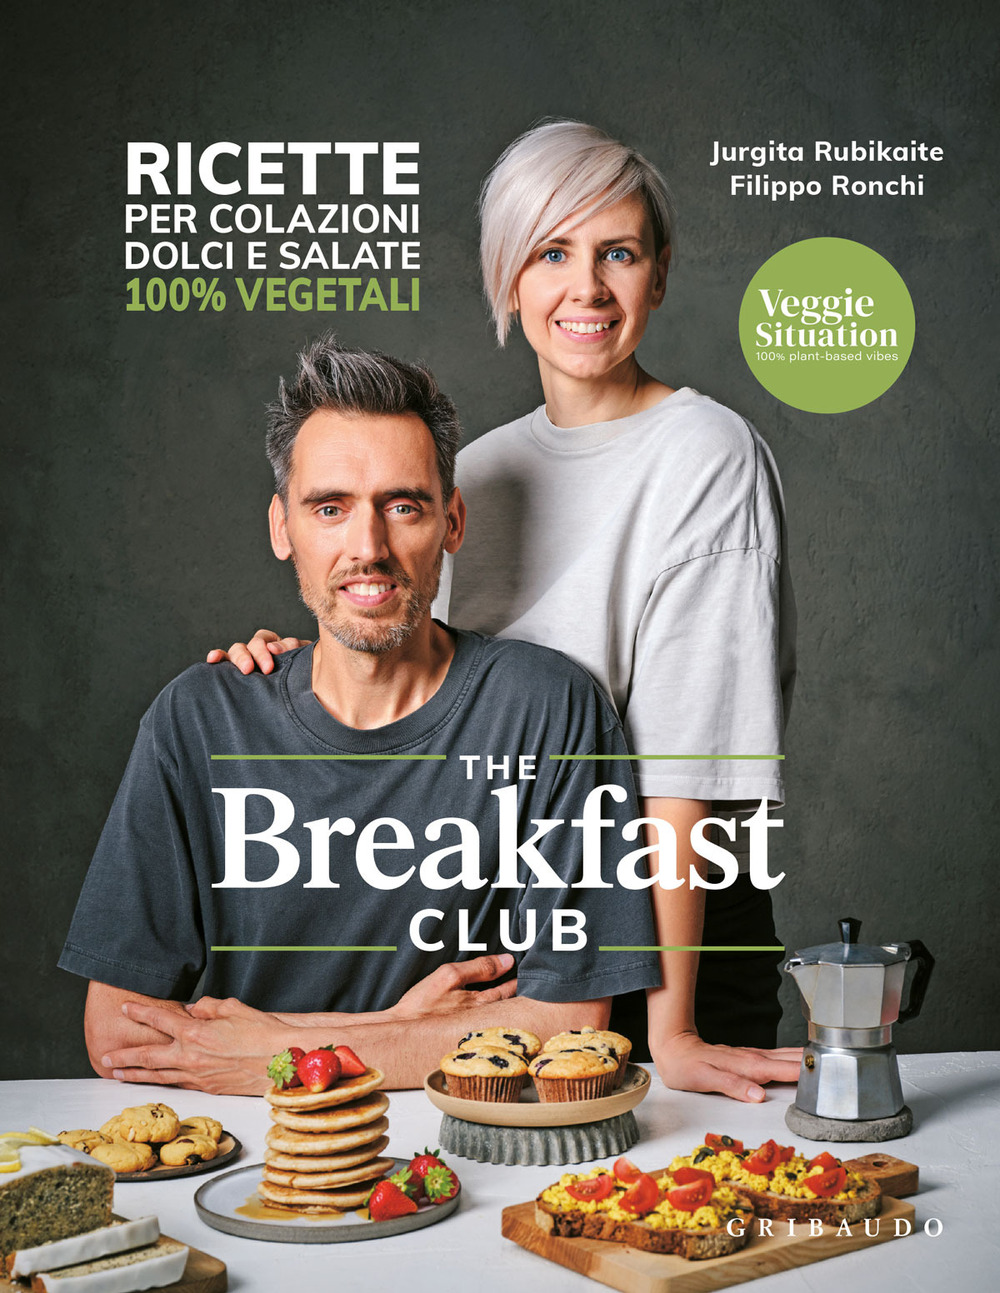 The breakfast club. Ricette per colazioni dolci e salate 100% vegetali